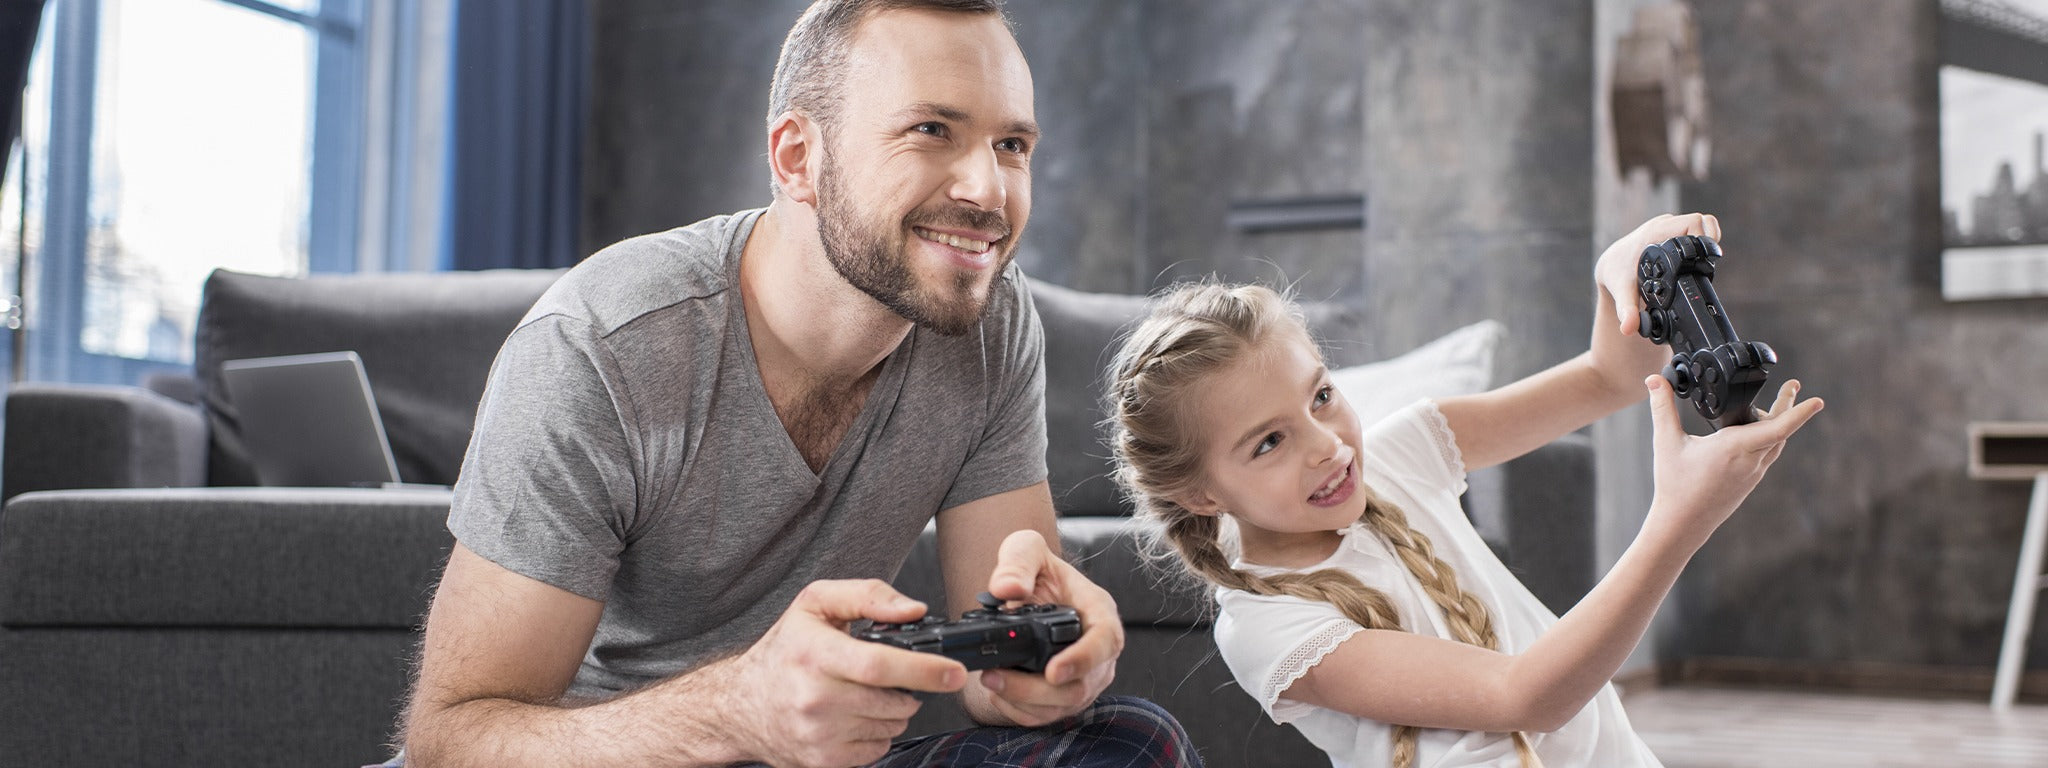 Classificações de idade de jogos de vídeo explicadas - Internet Matters